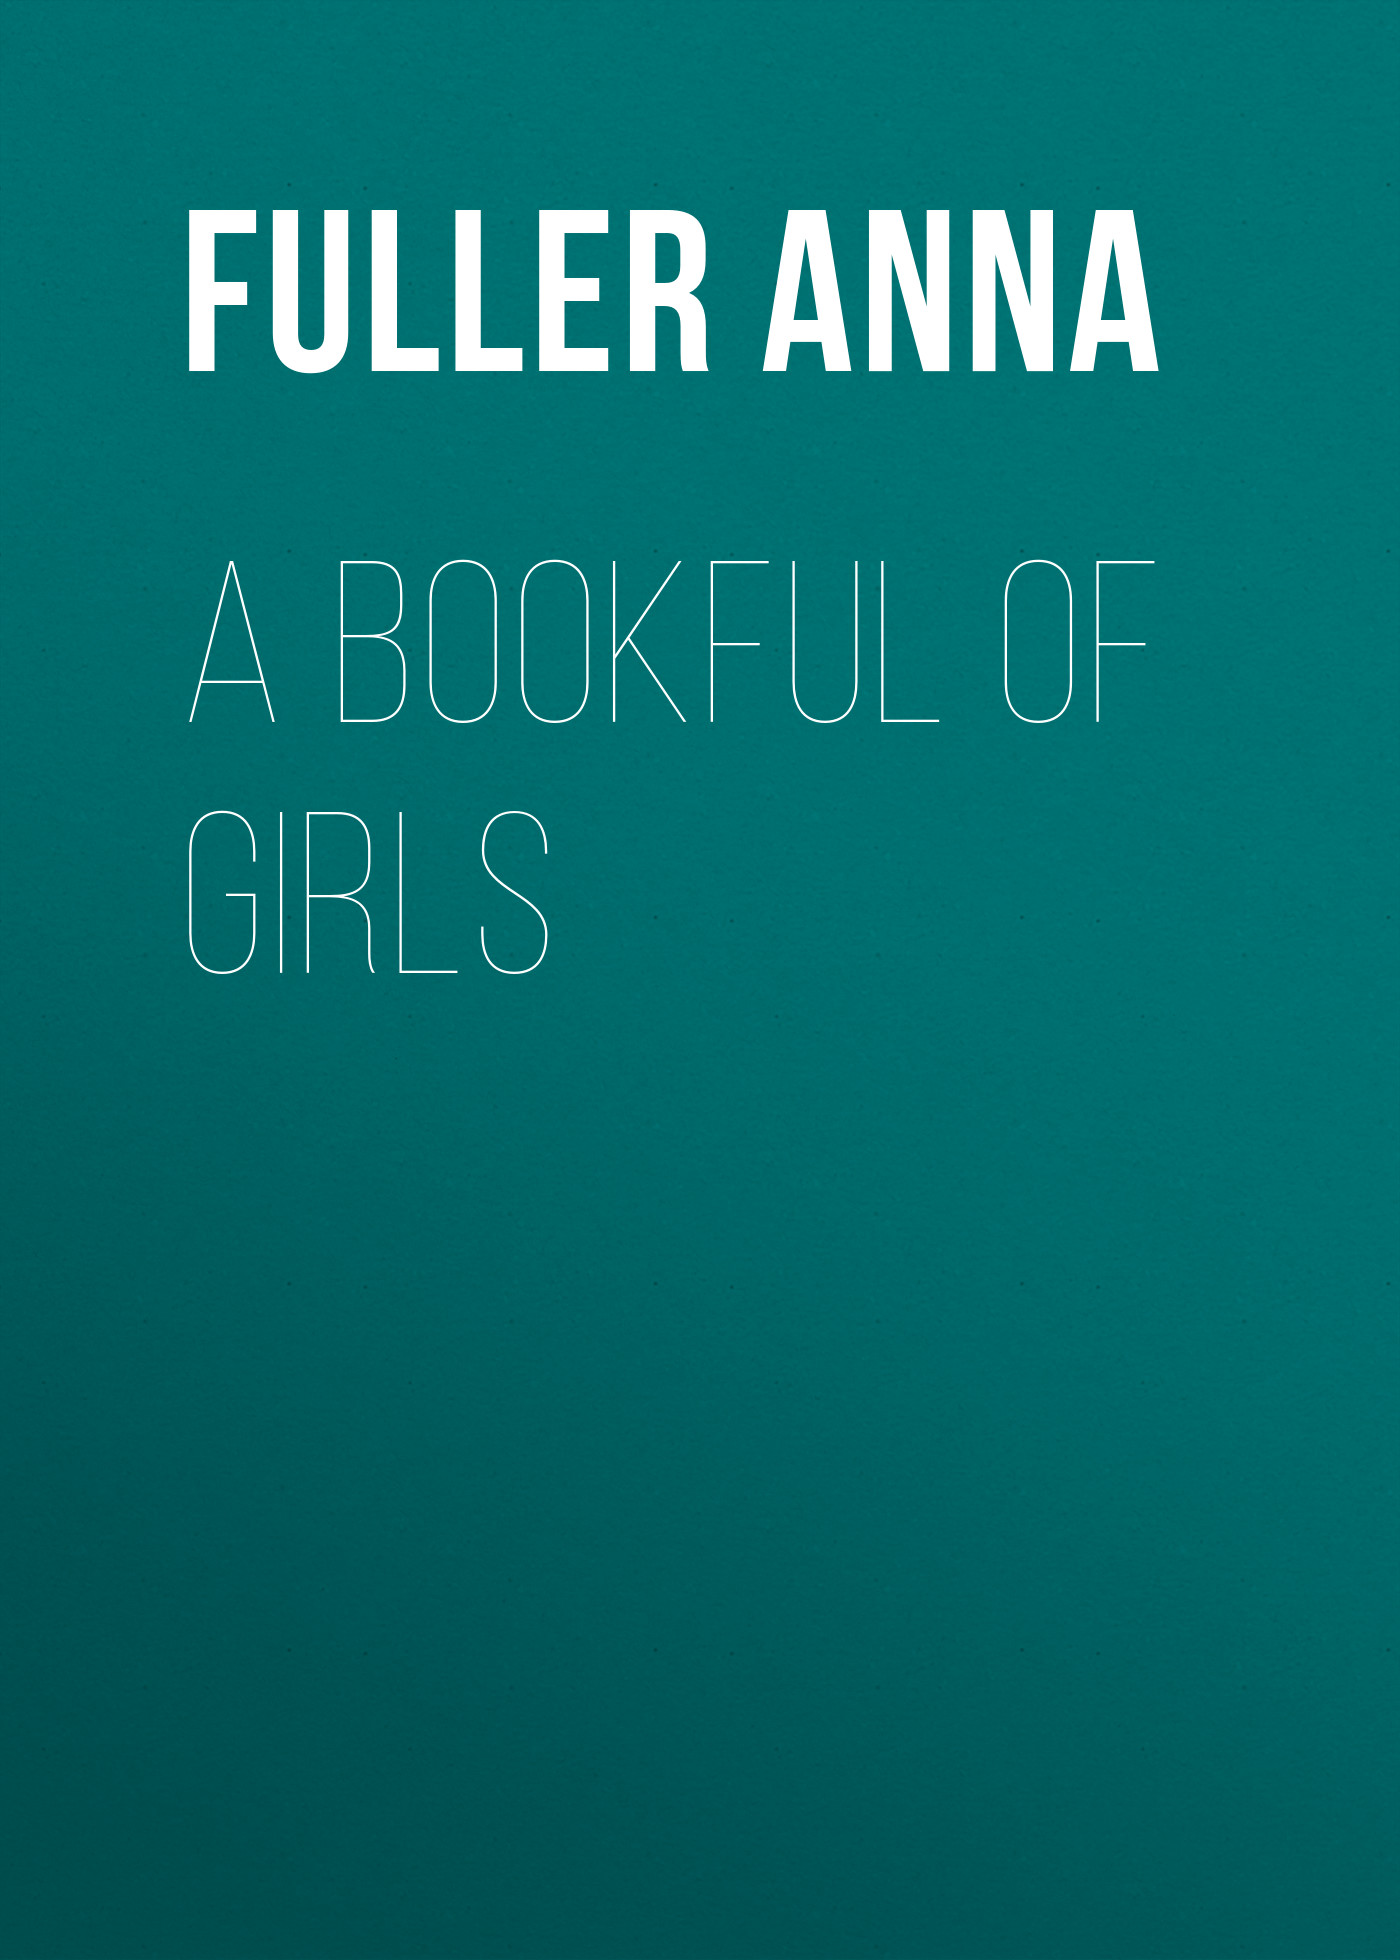 Книга A Bookful of Girls из серии , созданная Anna Fuller, может относится к жанру Зарубежная старинная литература, Зарубежная классика, Рассказы. Стоимость электронной книги A Bookful of Girls с идентификатором 24860147 составляет 0 руб.